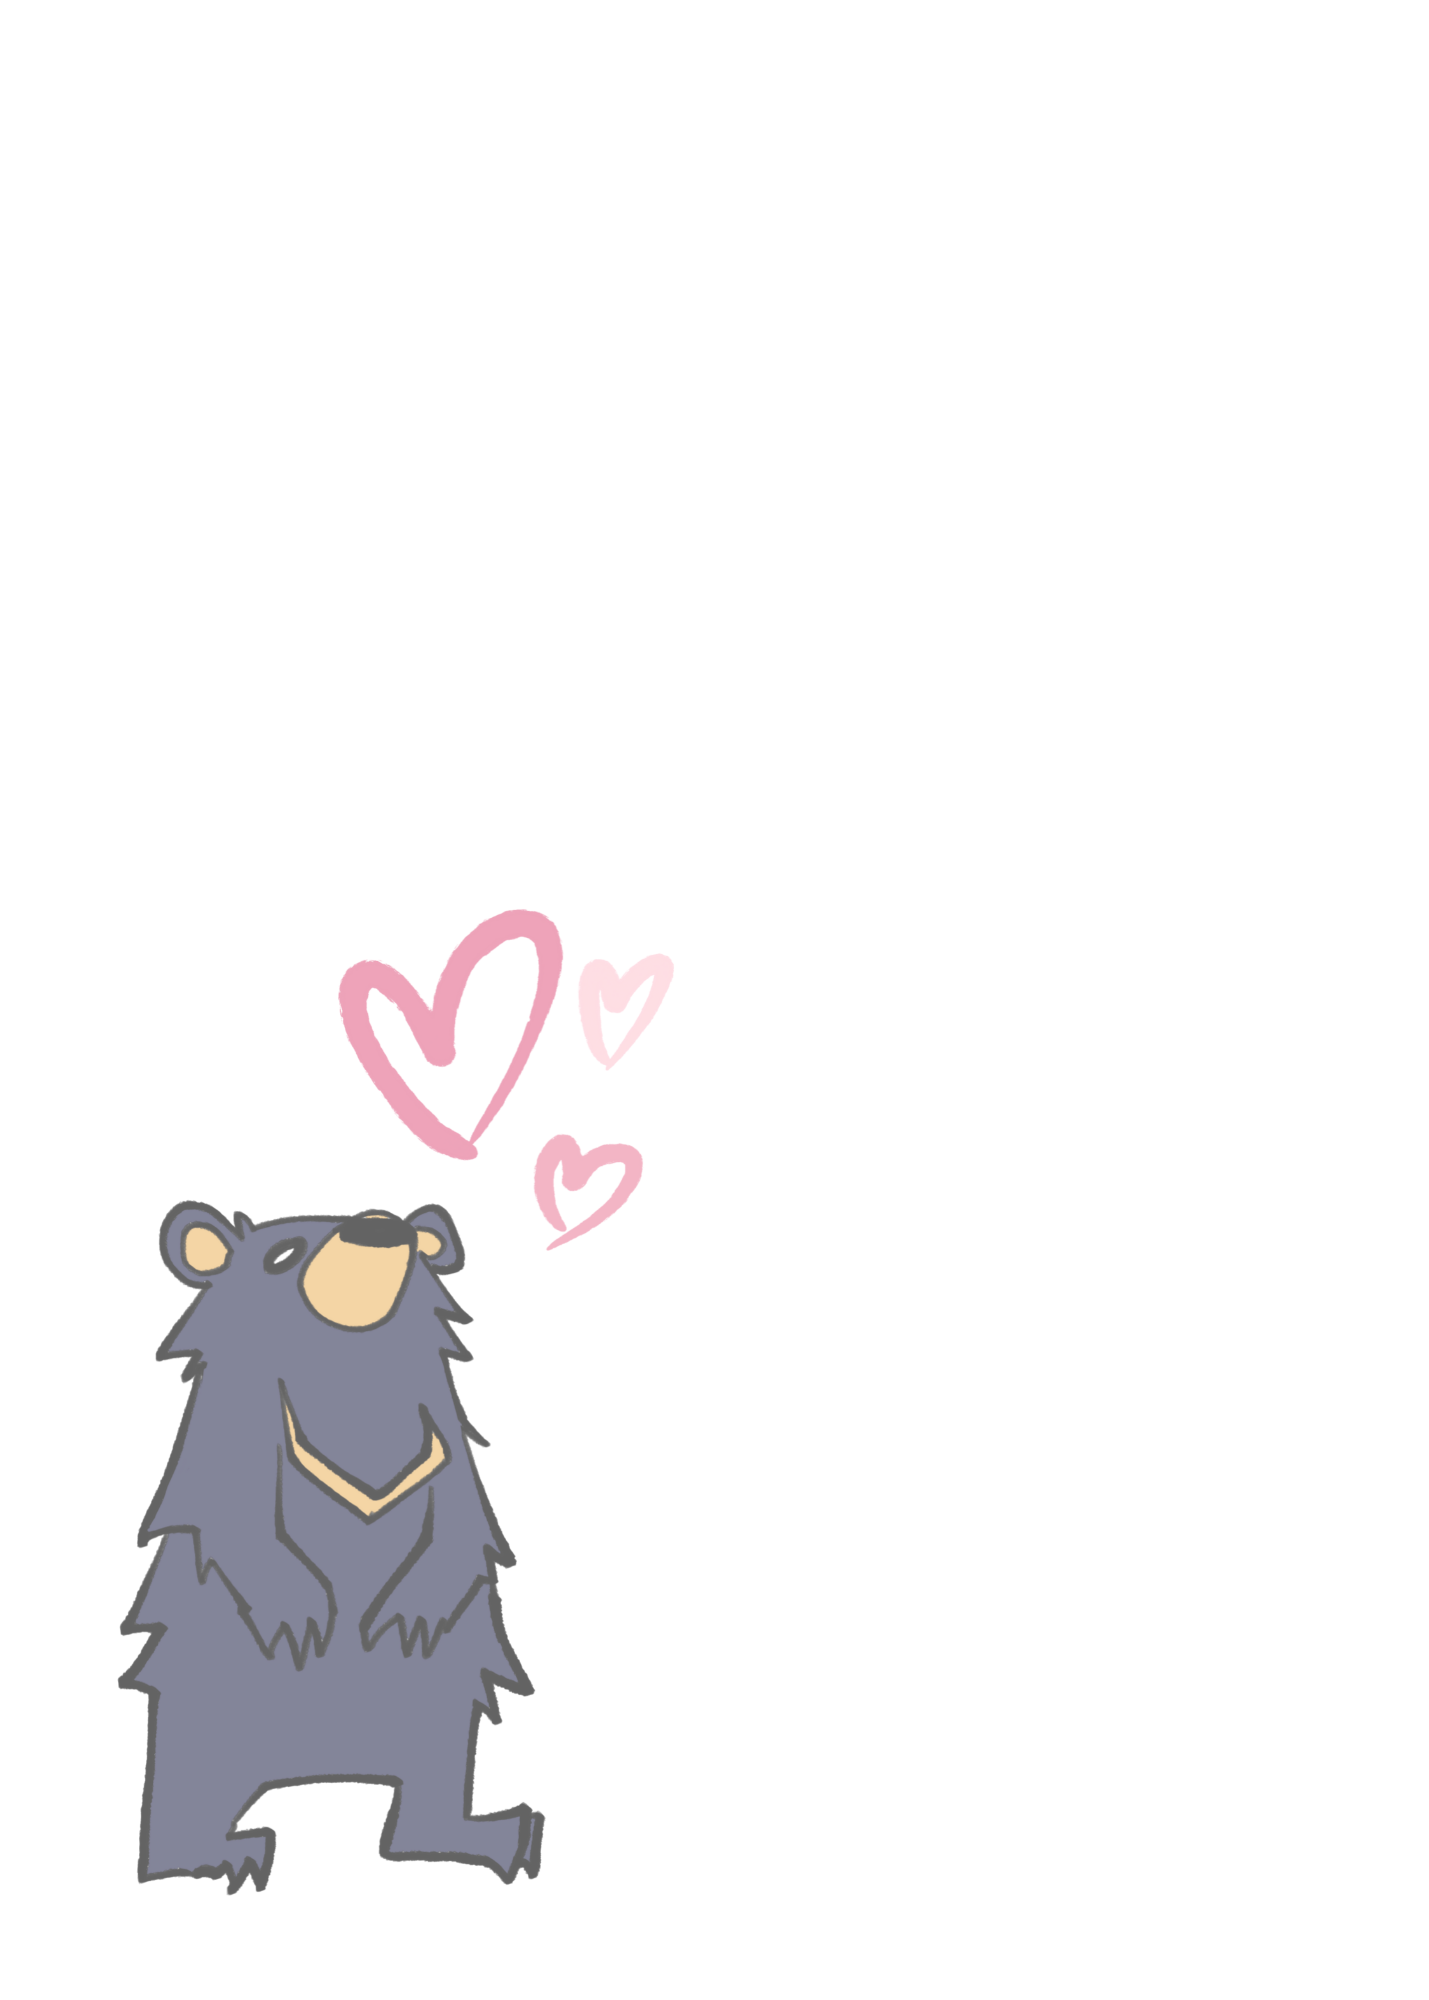 I love you bear-y much!